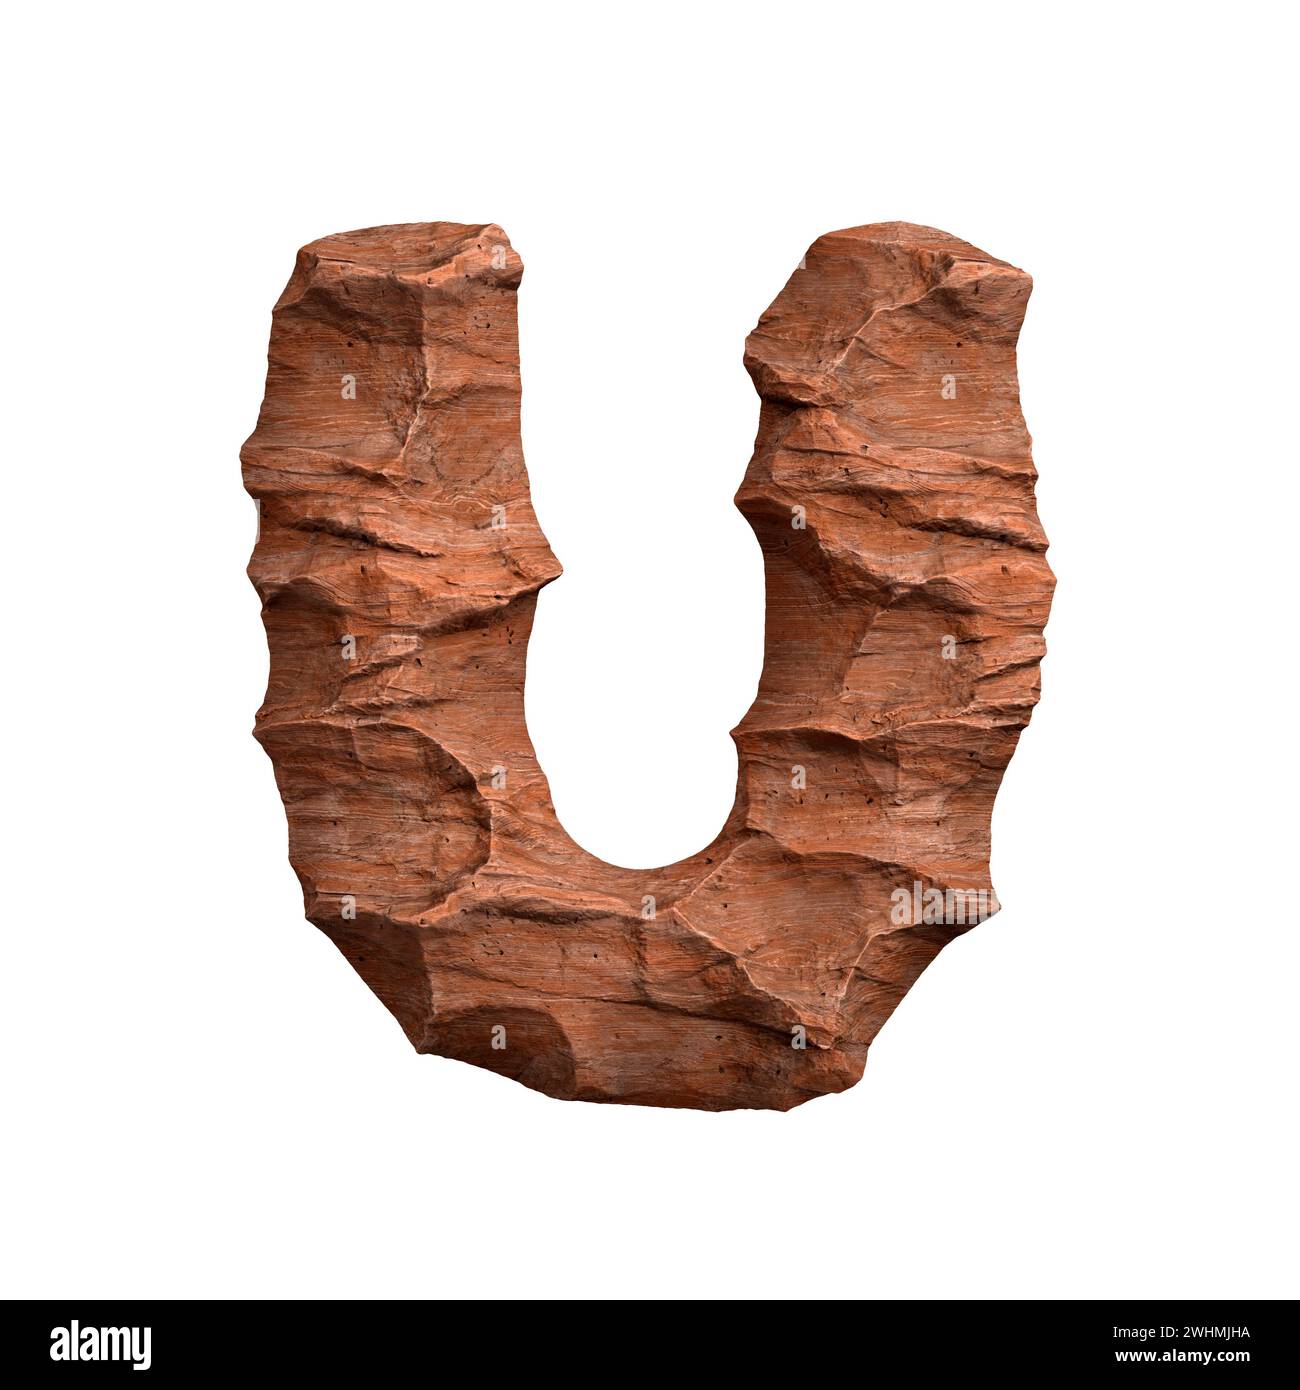 Lettera U in arenaria del deserto - font Capital 3d Red Rock - adatto per l'Arizona, la geologia o argomenti correlati al deserto Foto Stock